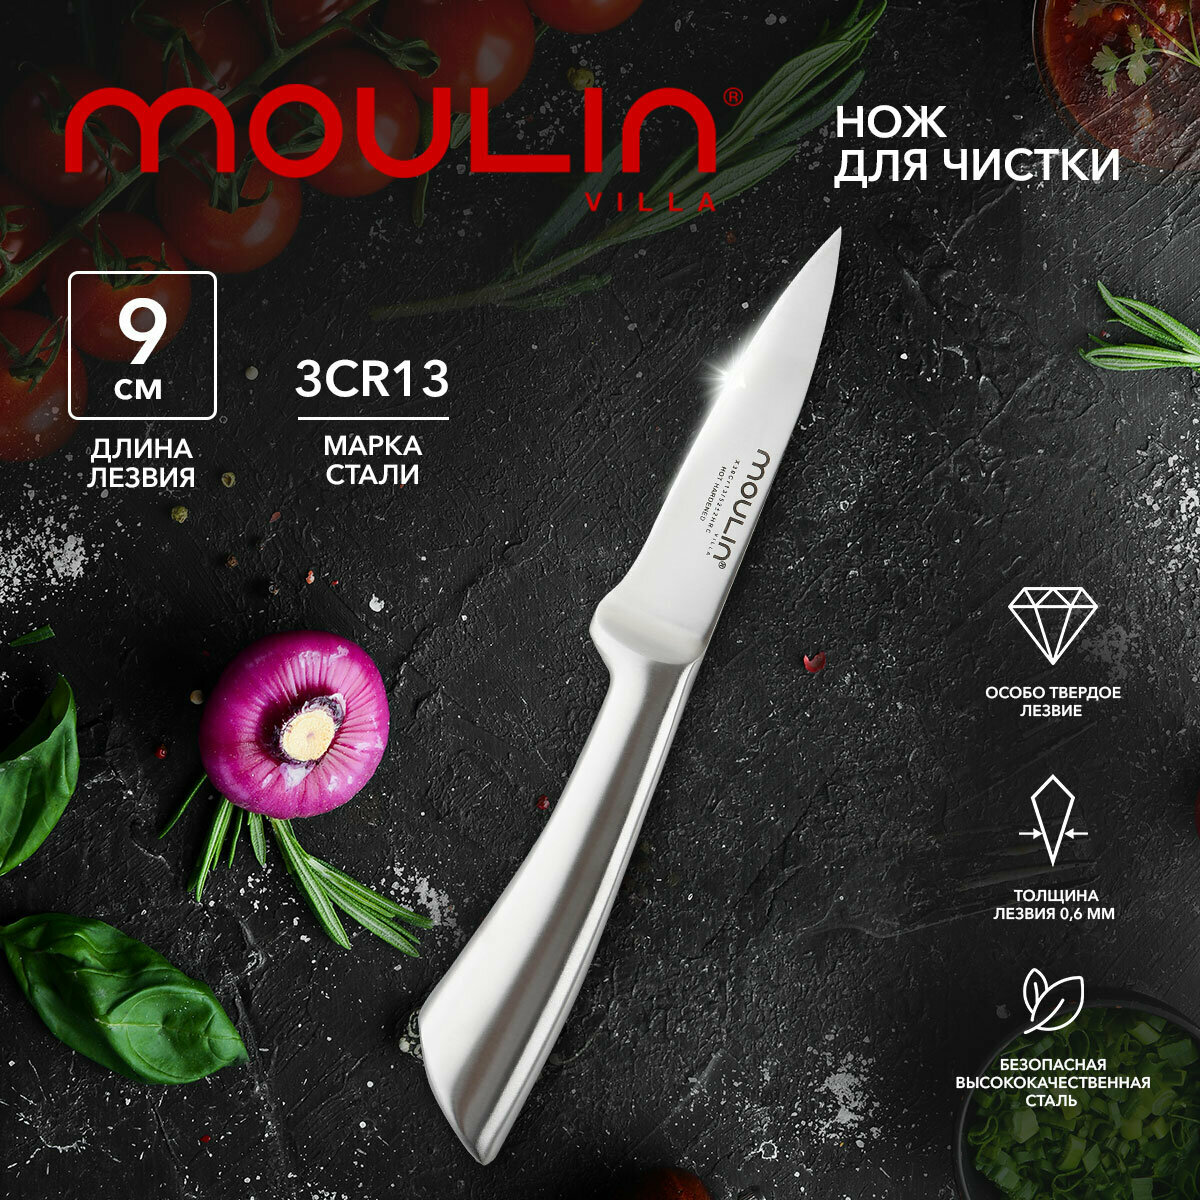 Нож для чистки кухонный 9 см Moulin Villa Lion MLNP-09 / нож для очистки овощей и фруктов